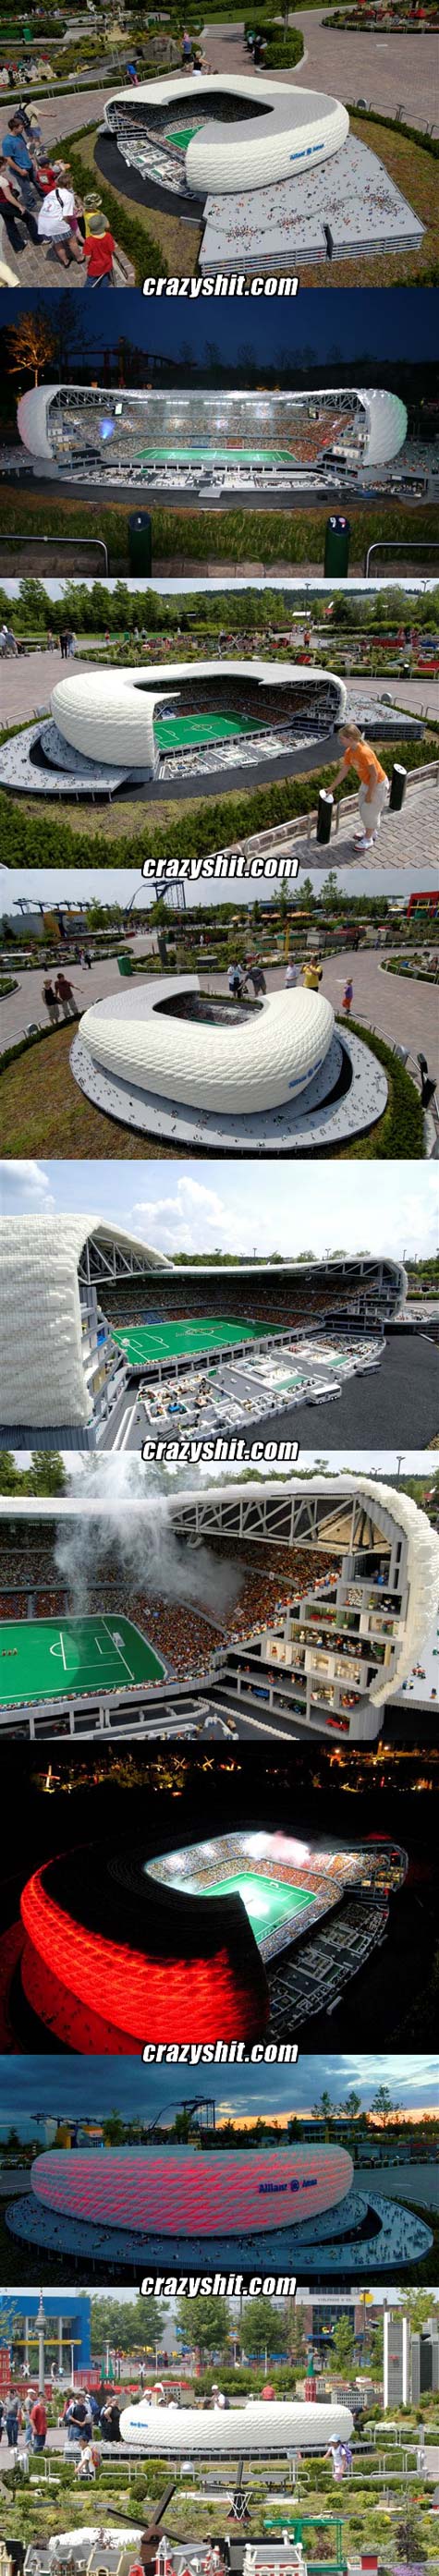 Lego Stadium